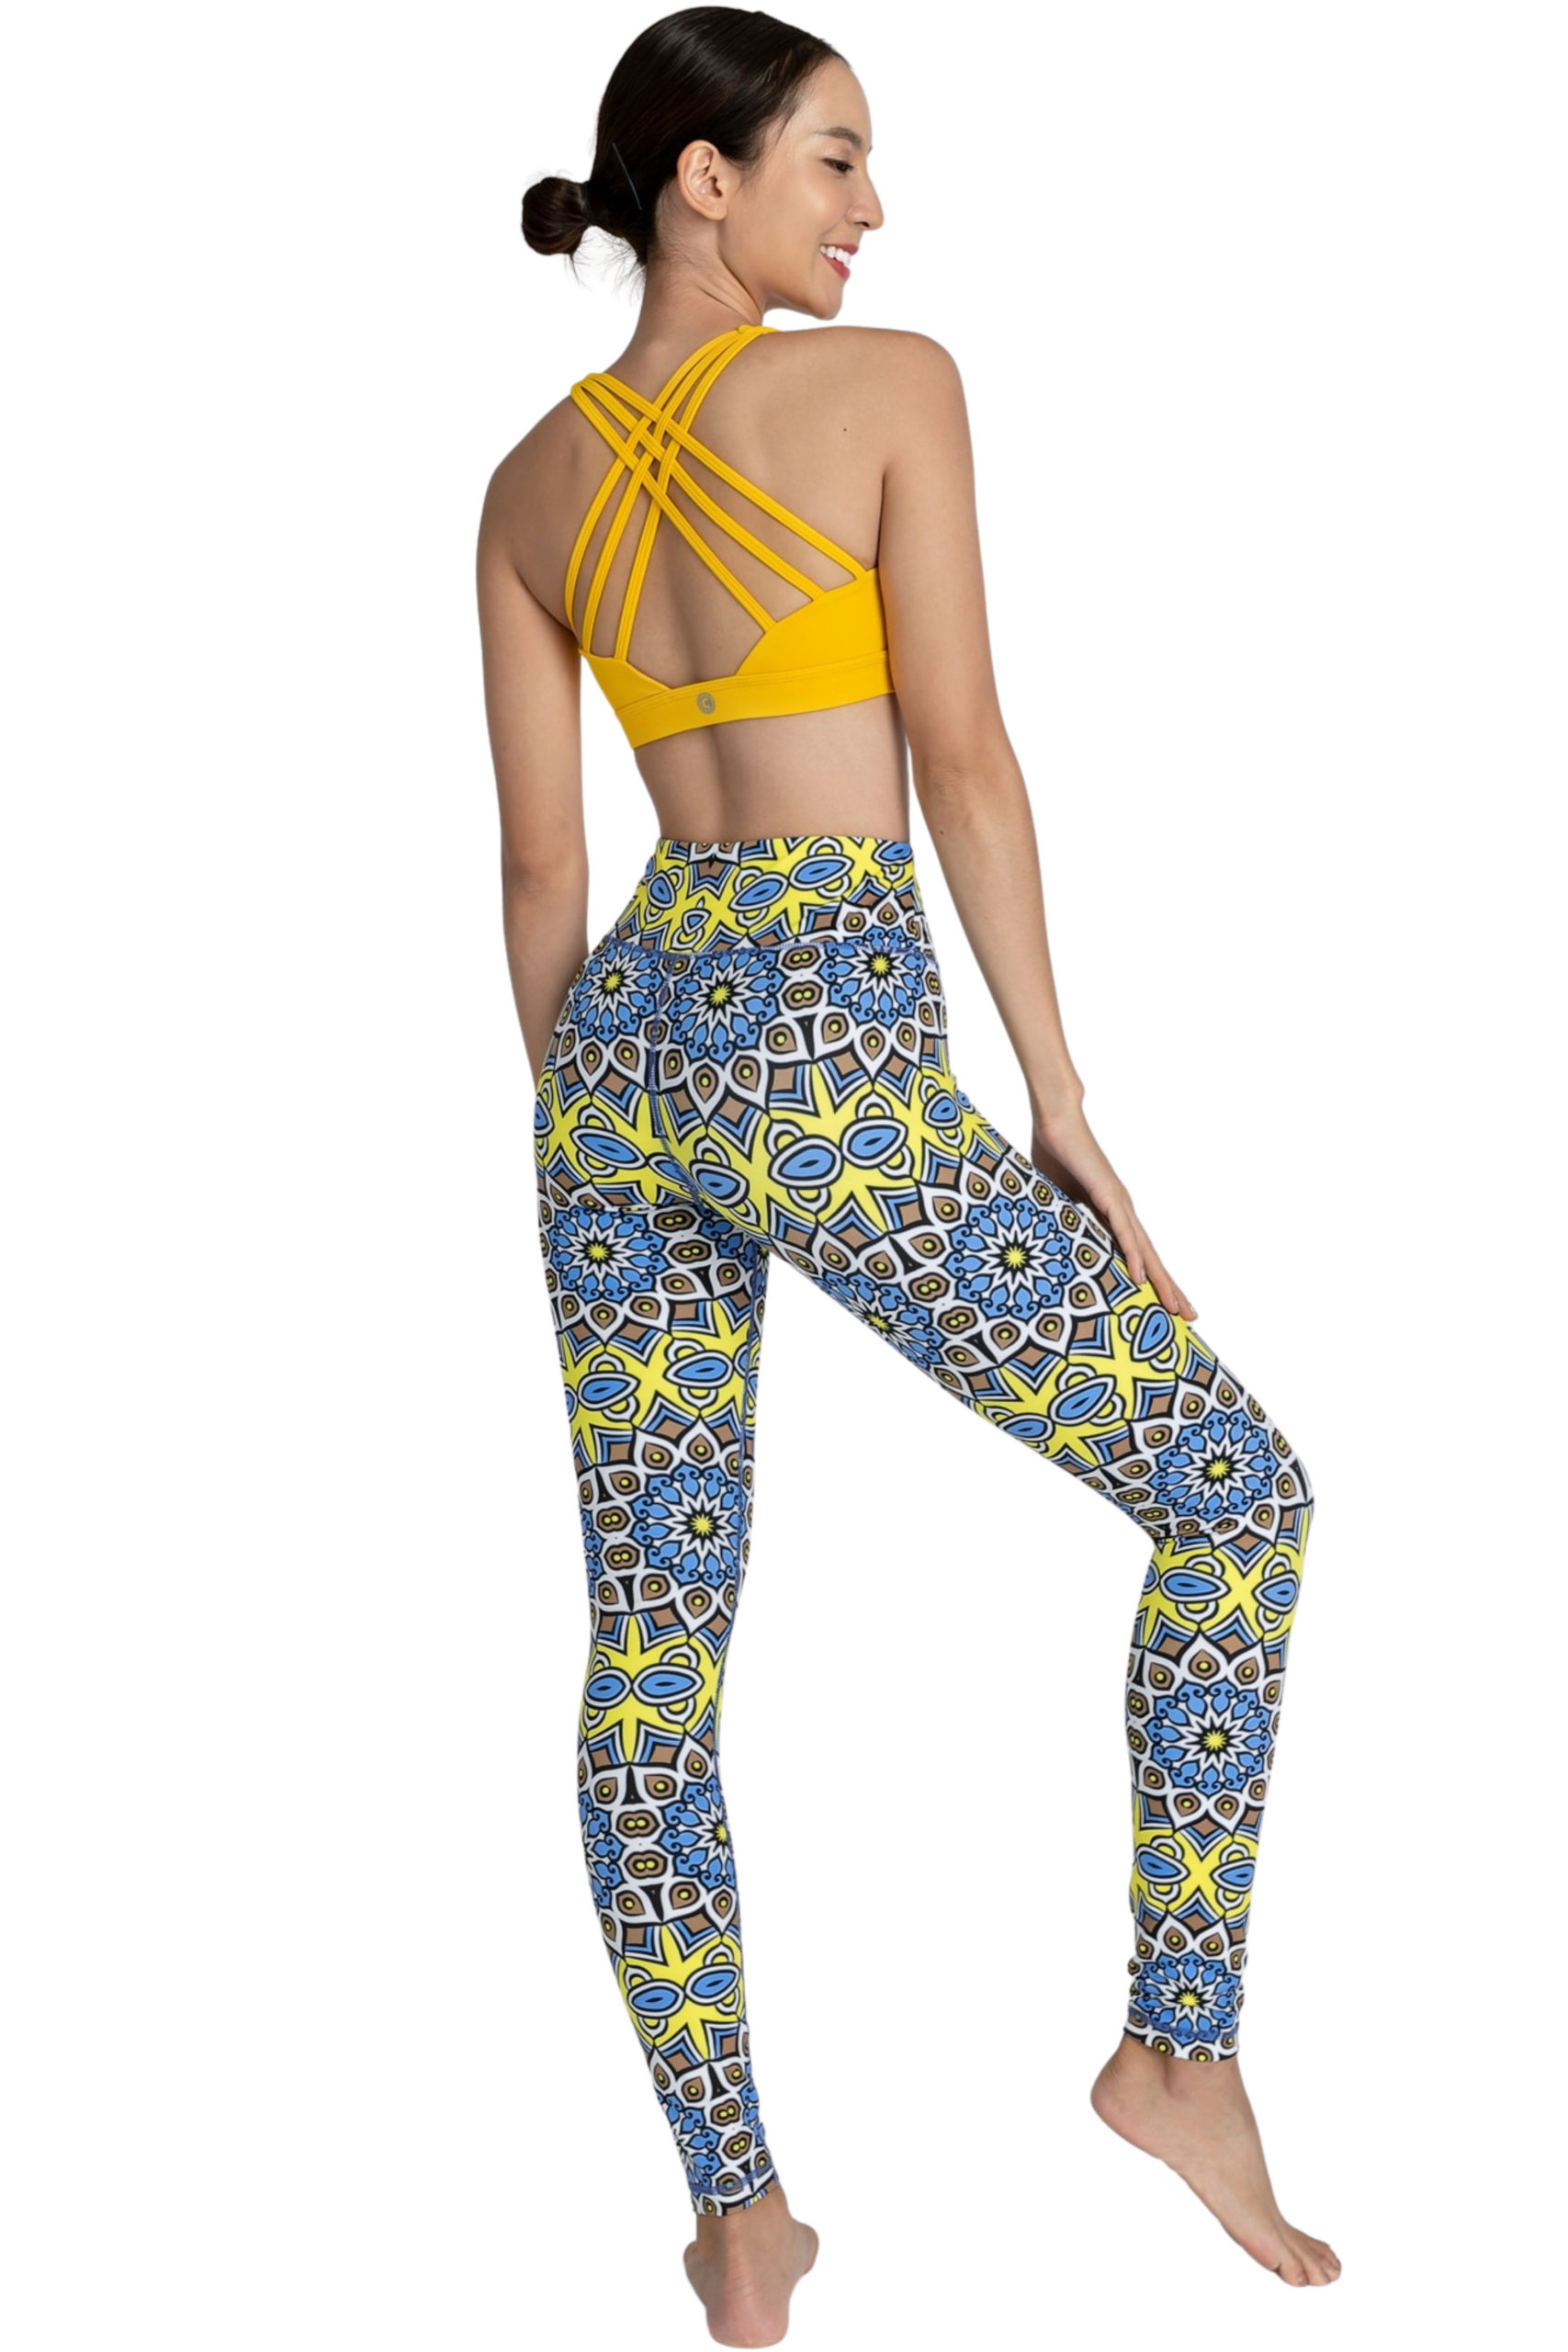 Pretty Splatter Full-Length Leggings by Chandra Yoga & Active Wear